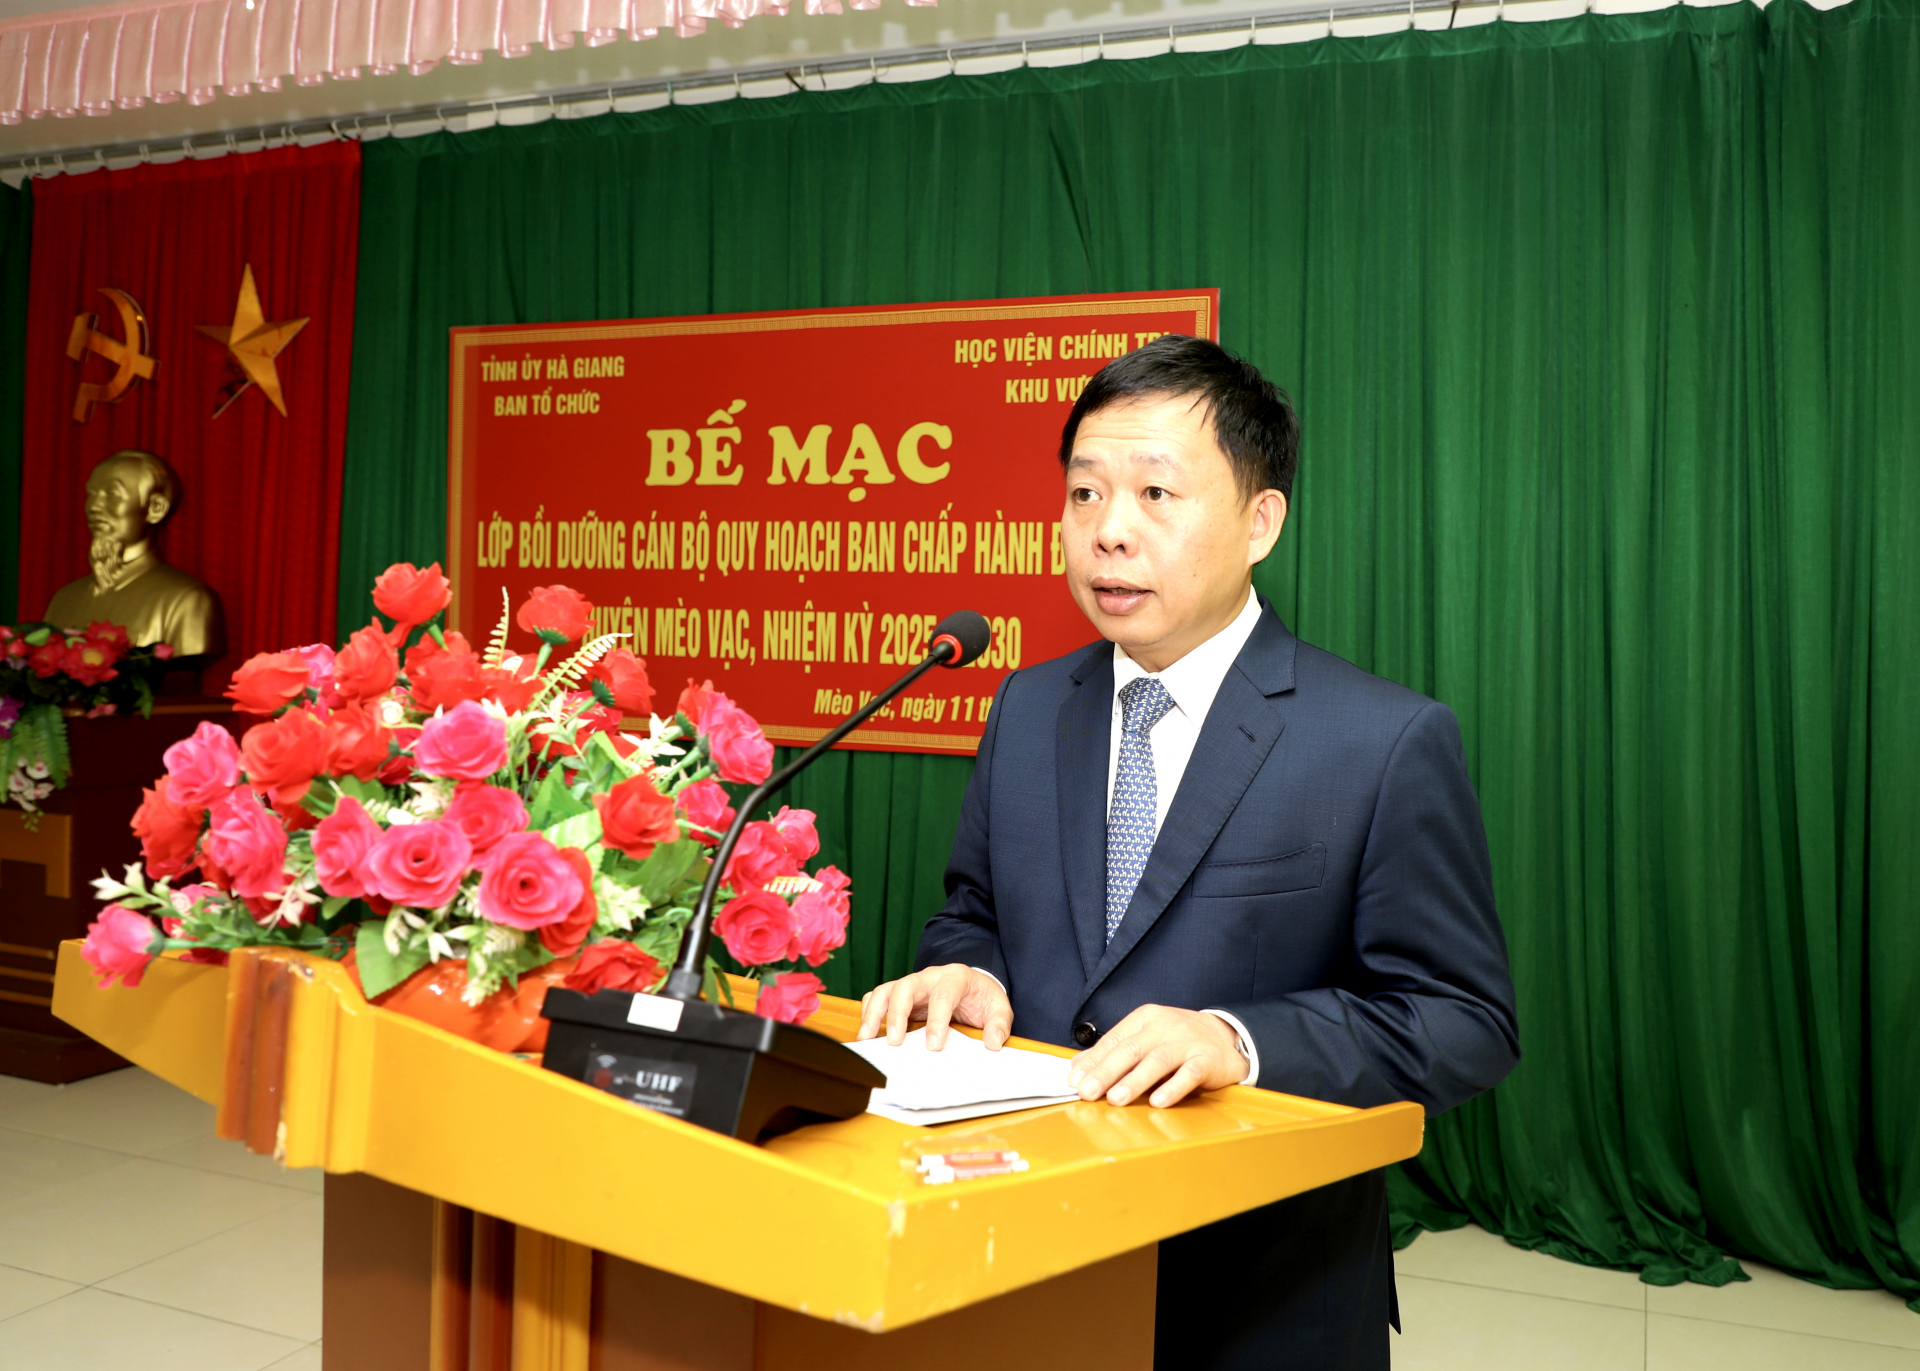 PGS.TS Nguyễn Vĩnh Thanh, Giám đốc Học viện Chính trị khu vực I phát biểu tại buổi lễ